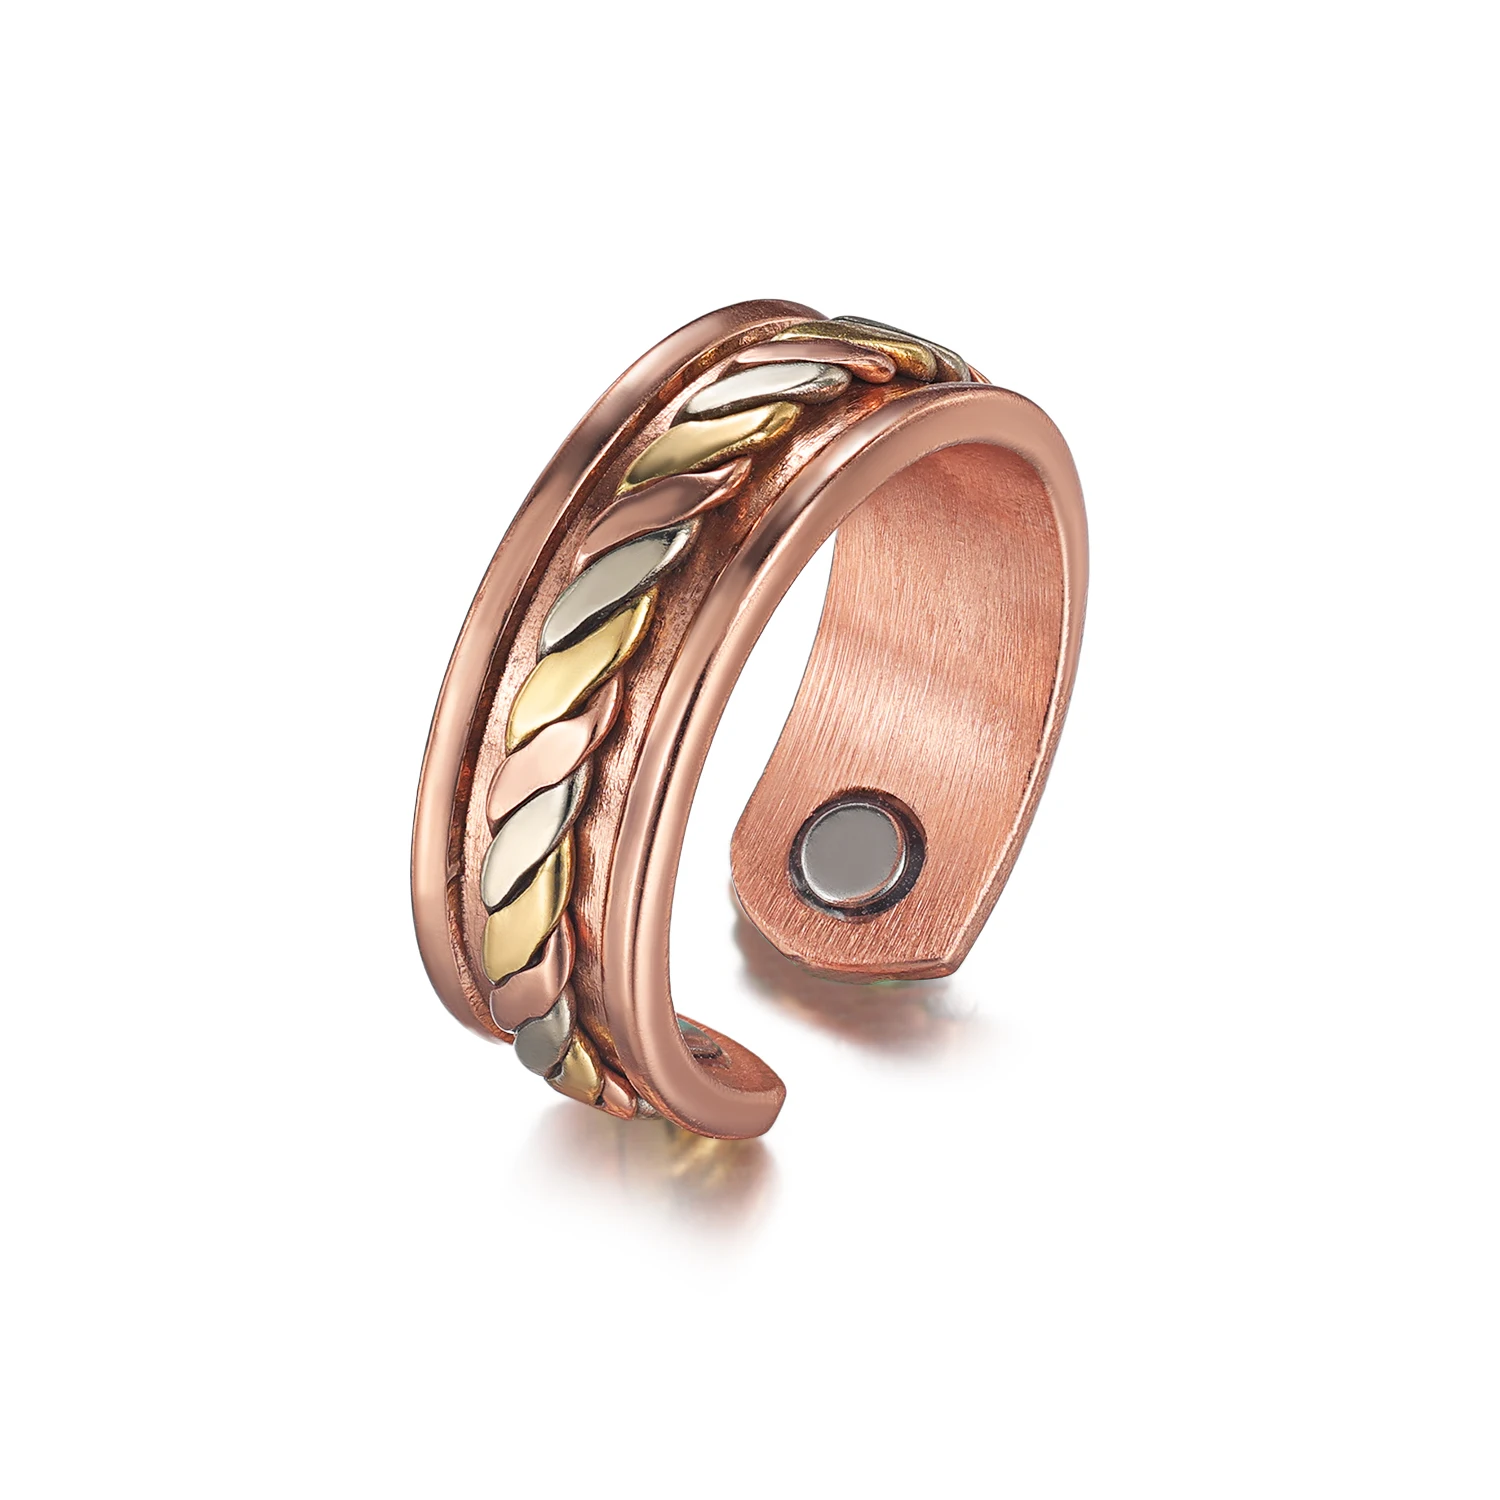 copper ring benefits in astrology copper useful for which zodiac signs |  तांबे का छल्ला पहनते हैं तो भूलकर भी ना करें ऐसी गलती, जानें किसके लिए है  शुभ | Hindi News, धर्म